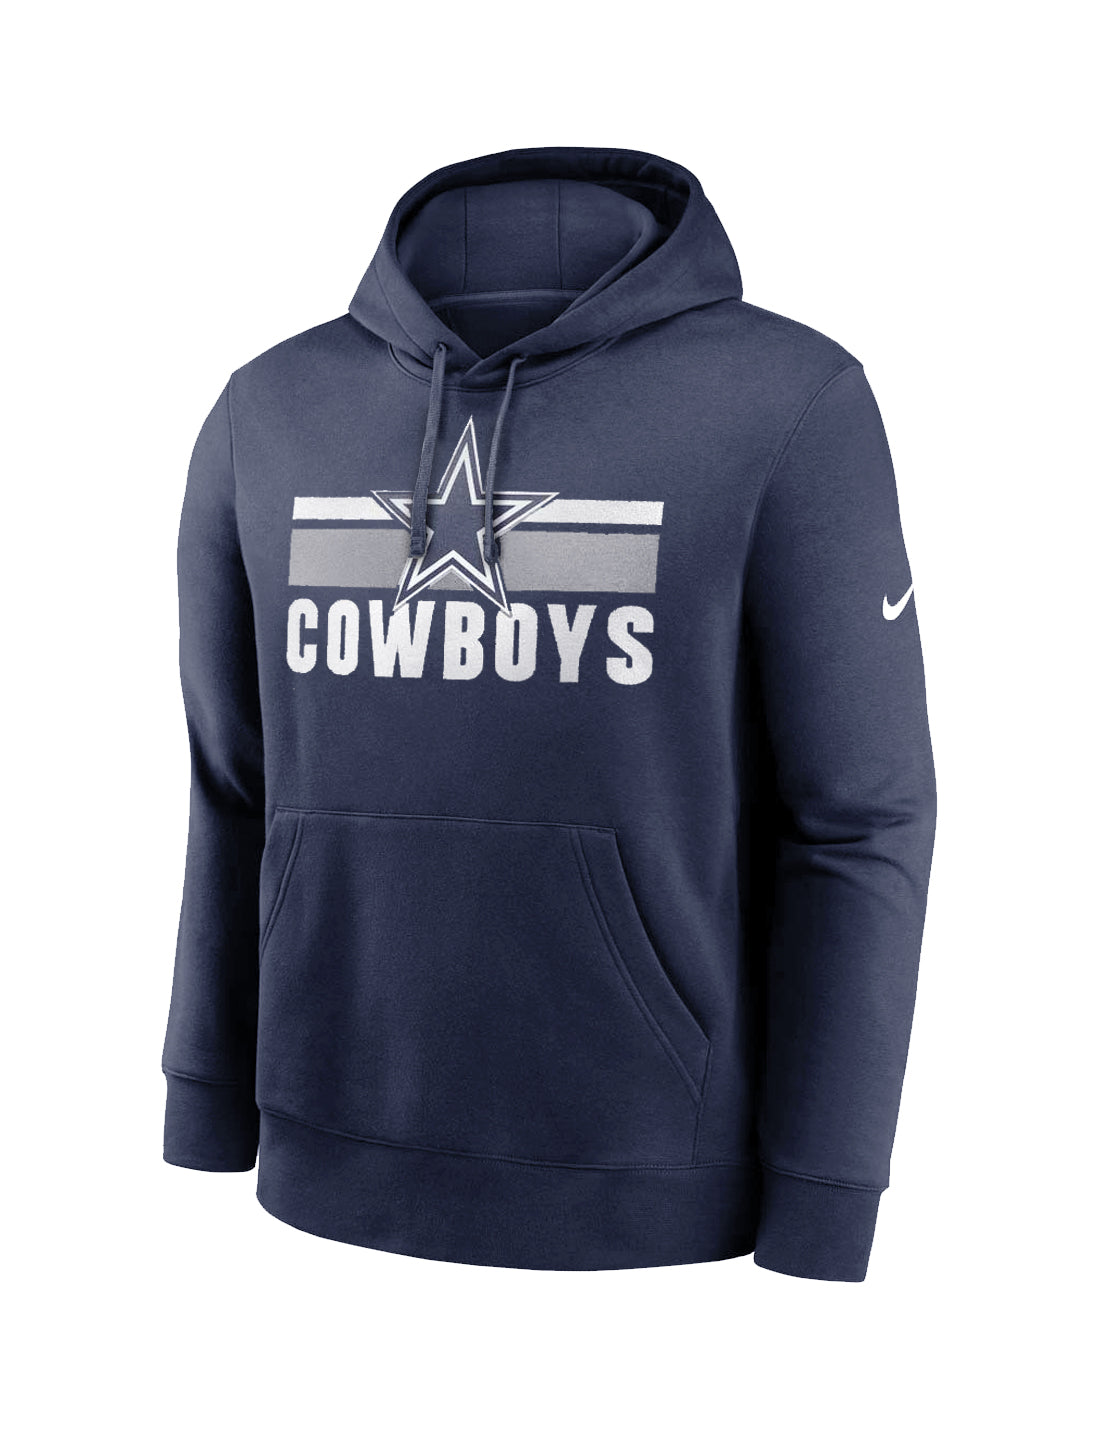 Dallas Cowboys Nike NFL Team Stripes Hoodie Jumper - Navy